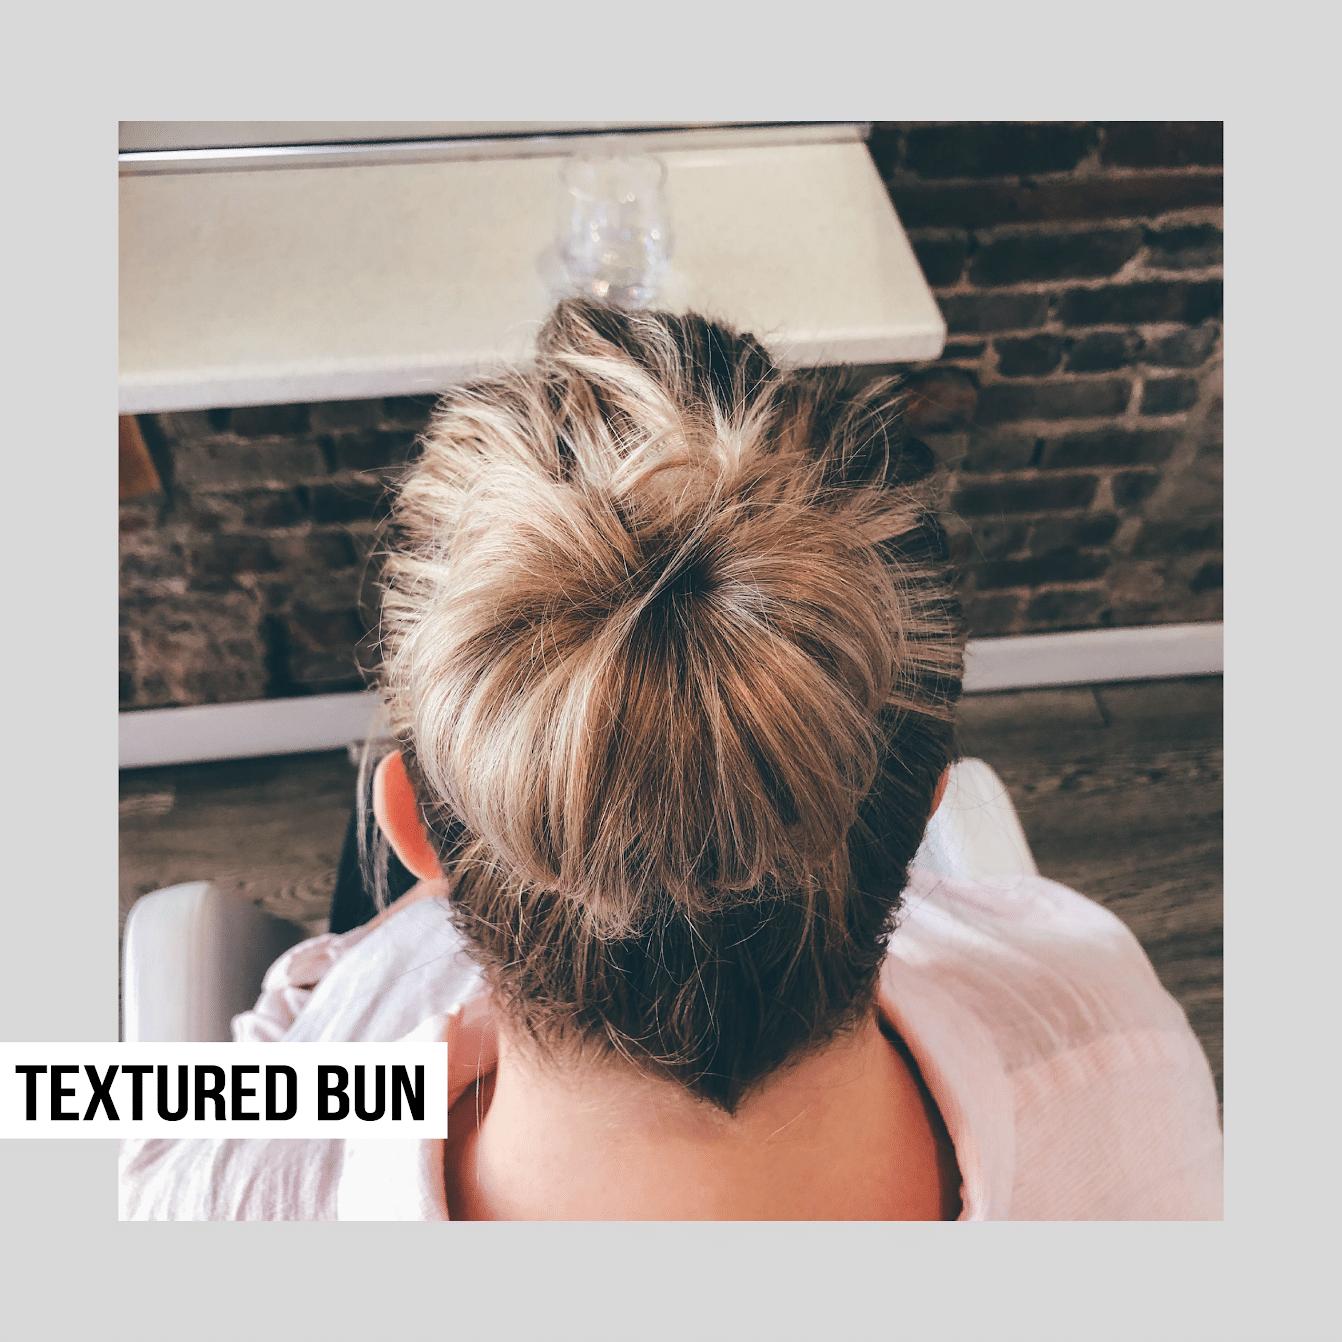 textured bun commuter hair